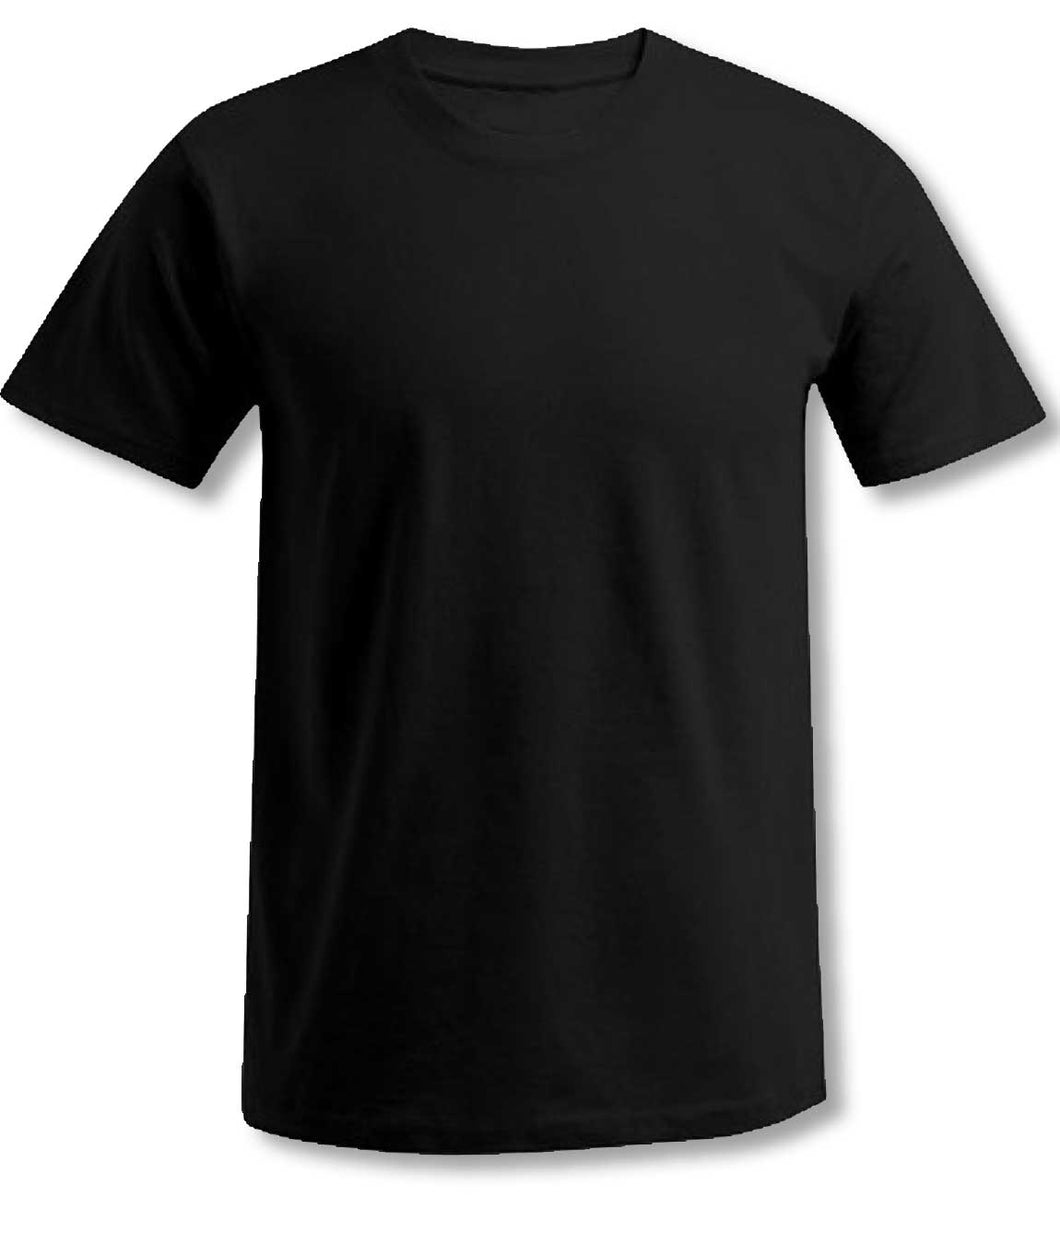 T-shirt promotionnel unisexe (soldes)